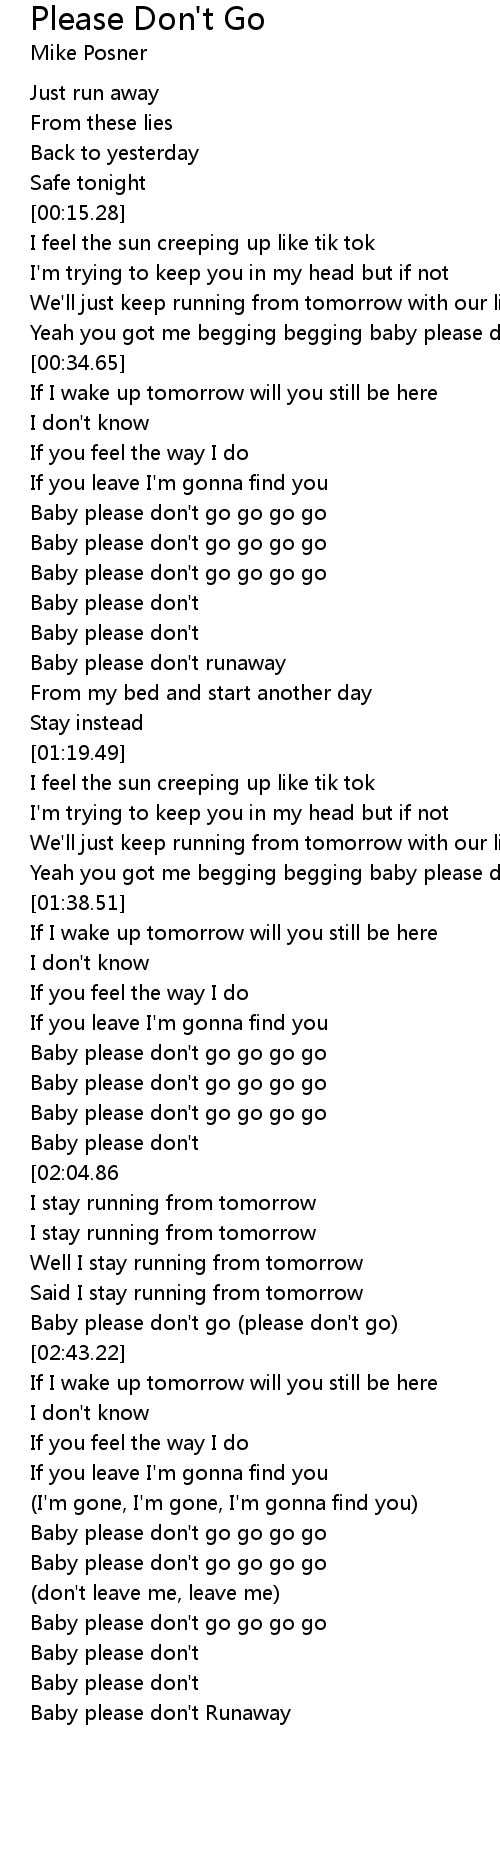 Please Don T Go Lyrics Follow Lyrics